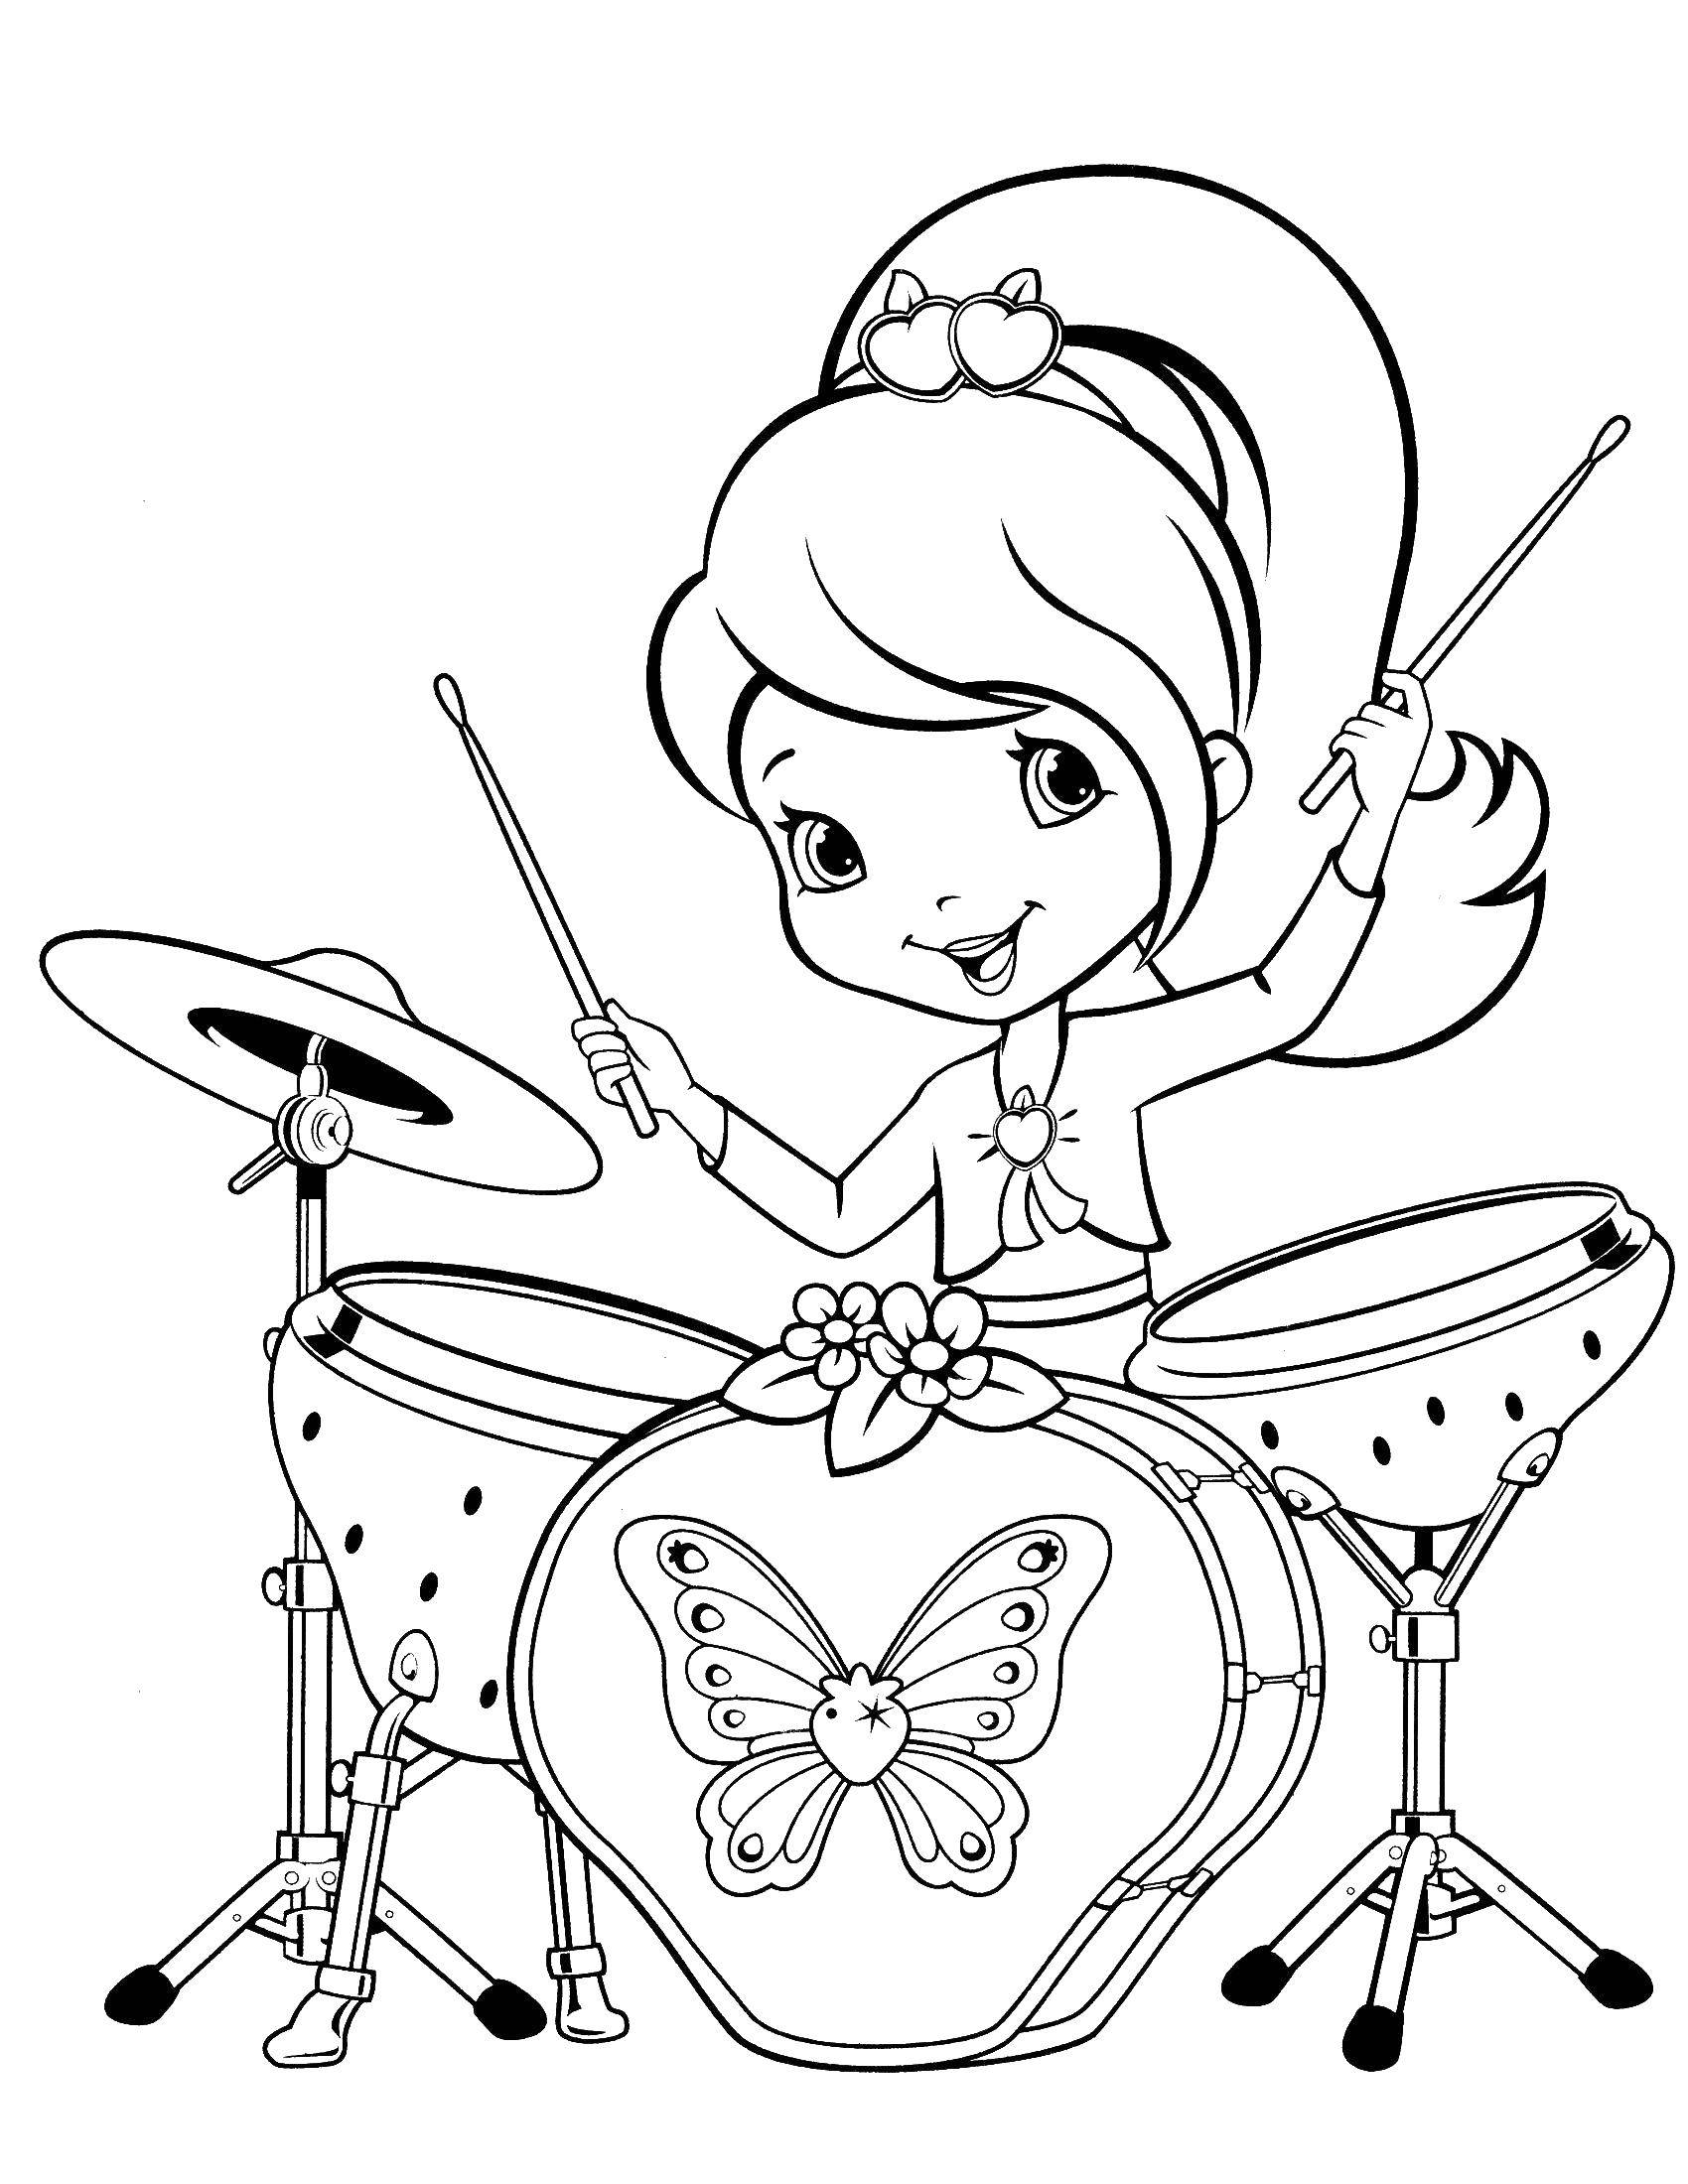 Название: Раскраска Шарлотта земляничка играет на барабанах. Категория: шарлотта земляничка мультики. Теги: шарлотта, клубничка.